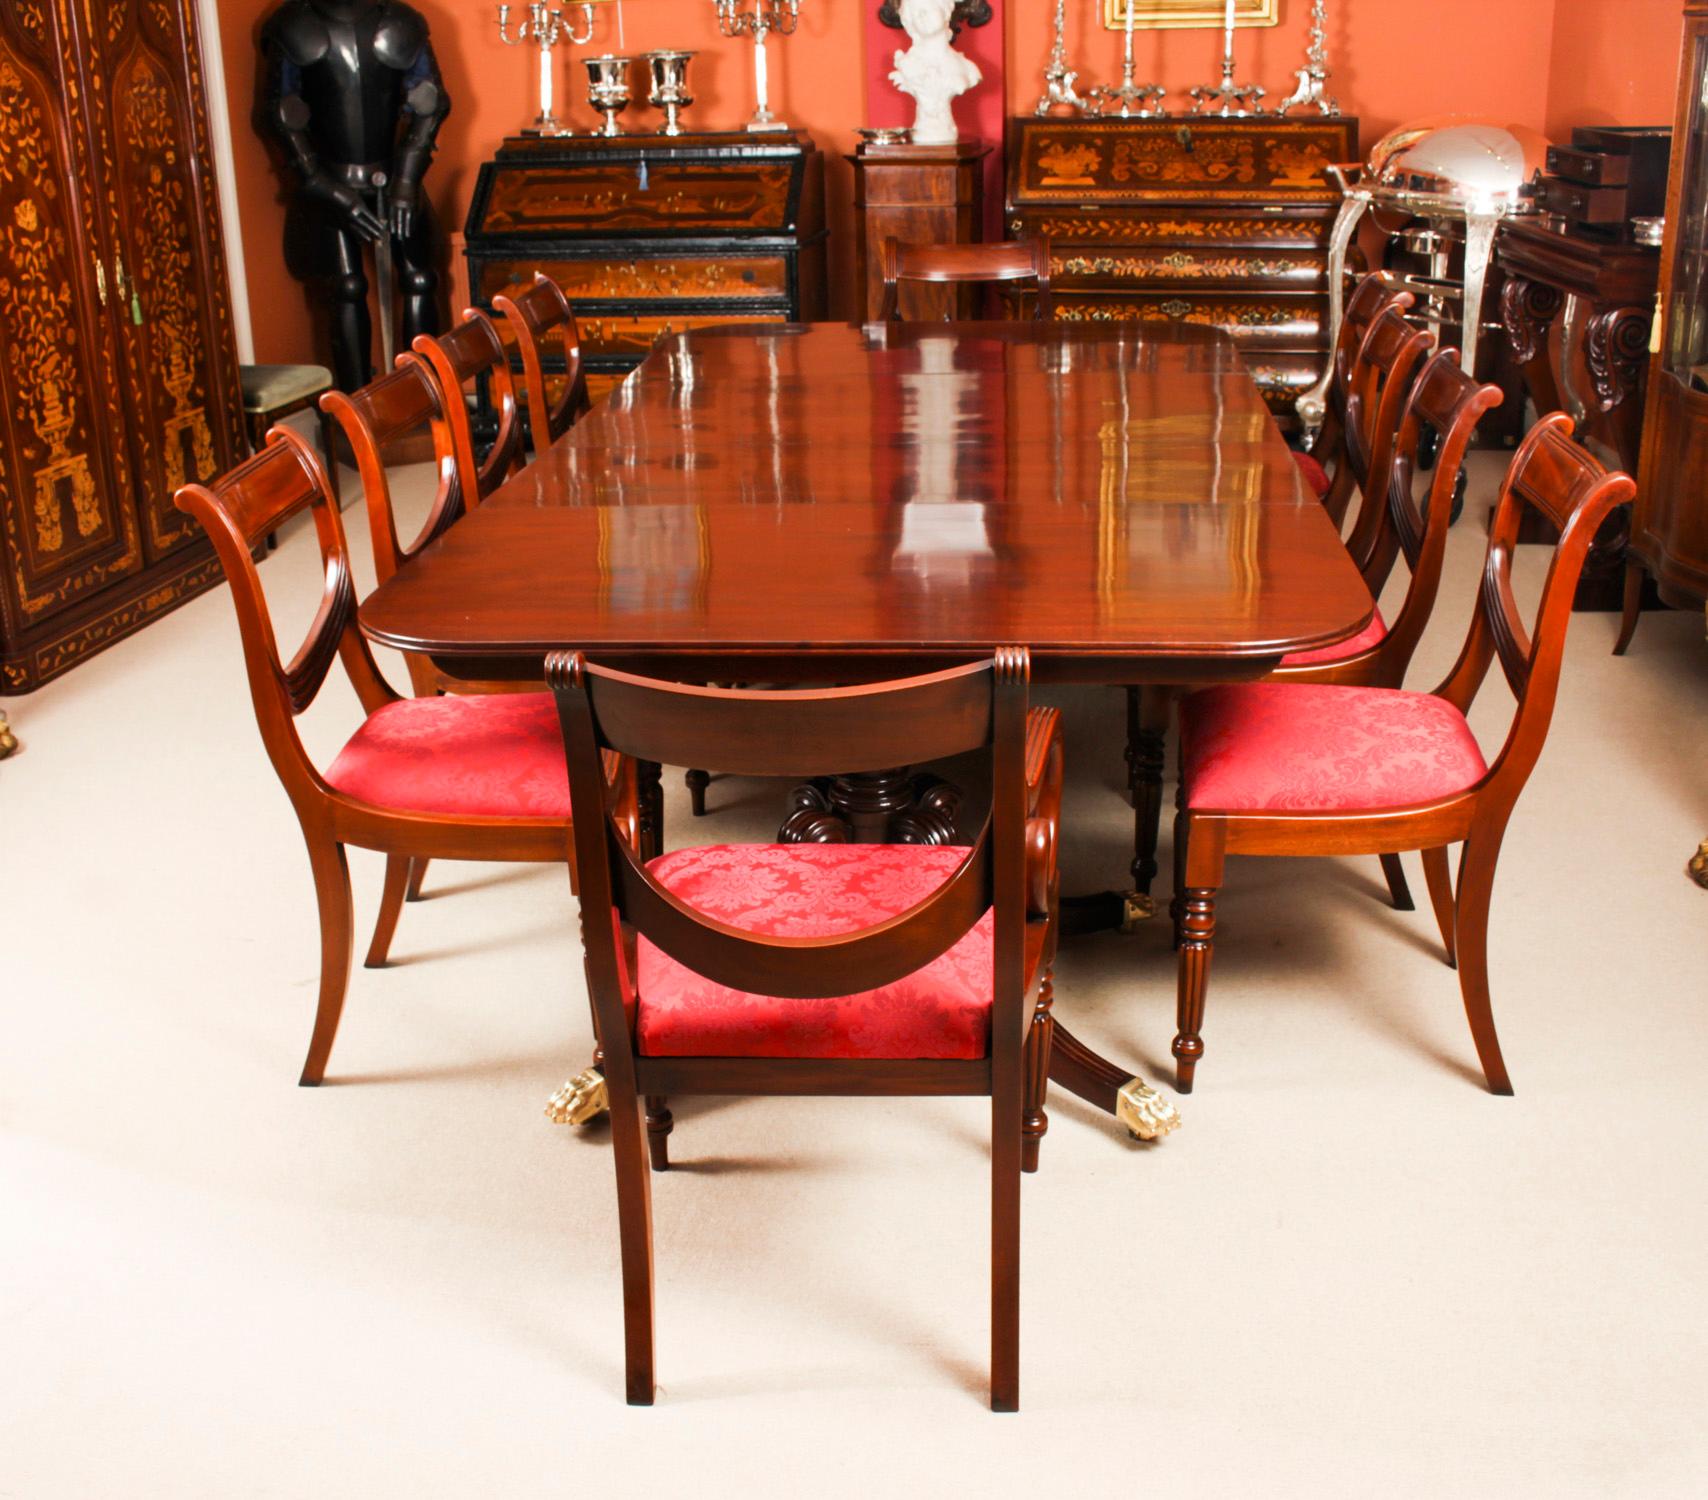 Il s'agit d'un élégant ensemble de salle à manger comprenant une table antique de style Regency datant de 1820 et un ensemble vintage de dix chaises de style Regency Revival à dossier en accordéon....

La table est de forme rectangulaire avec des